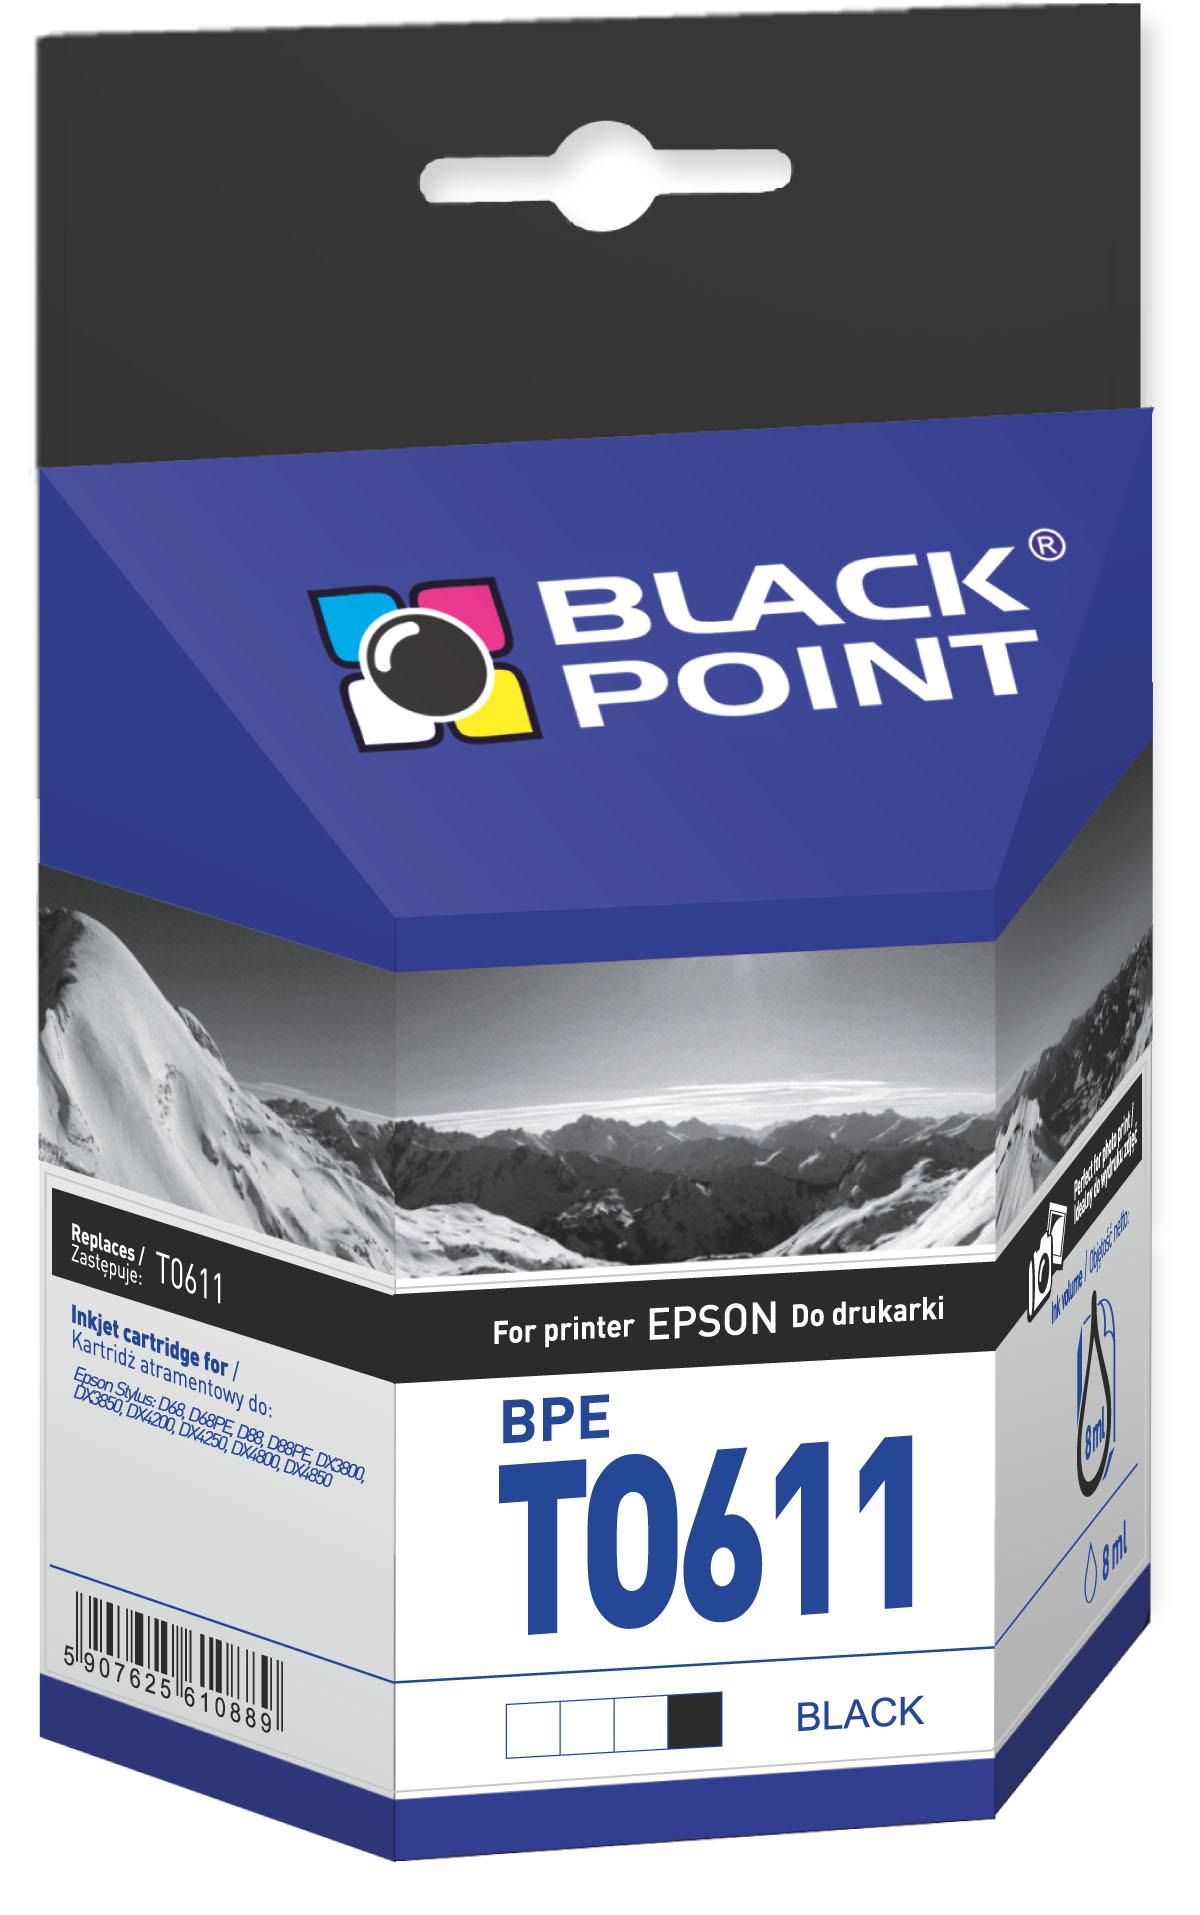 CMYK - Black Point tusz BPET0611 zastpuje Epson T0611, czarny